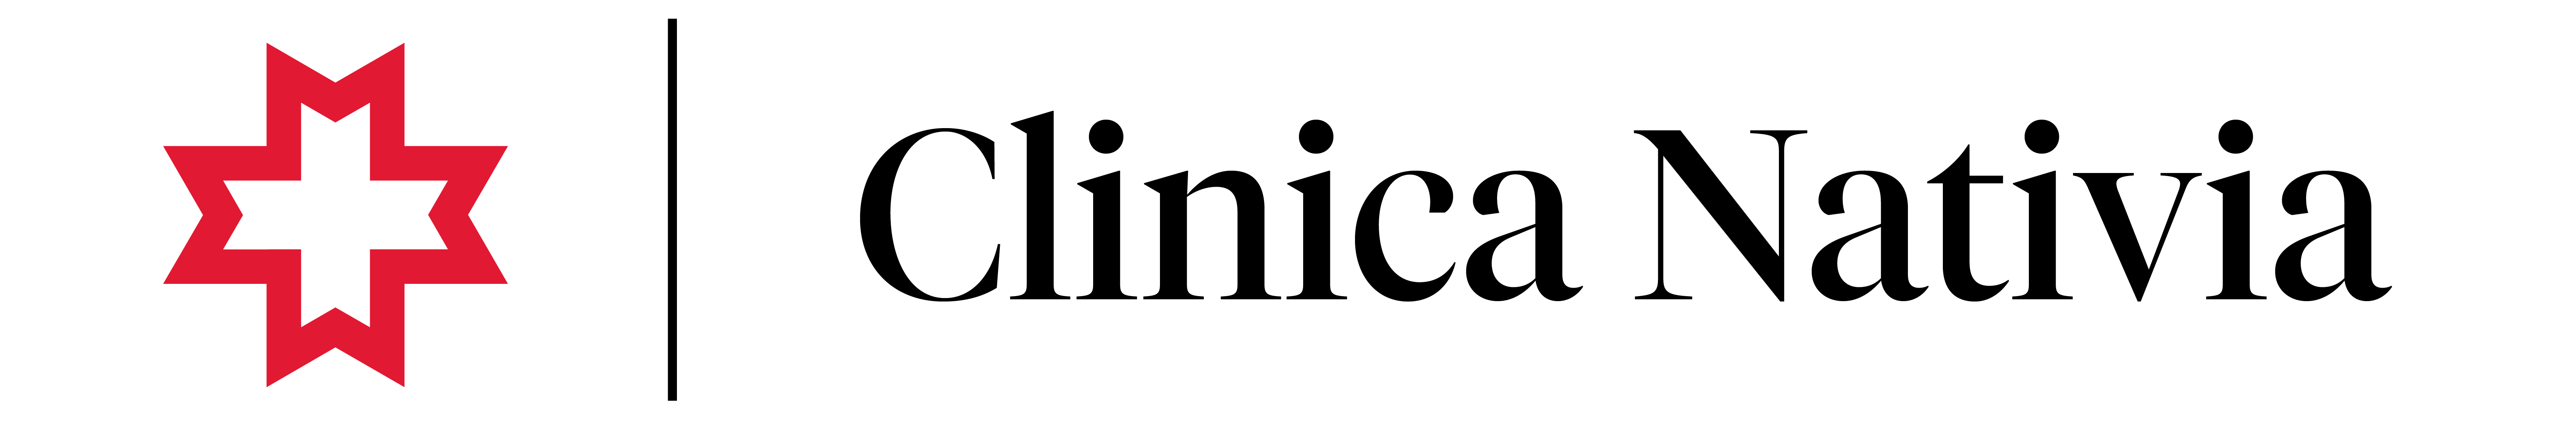 Nativia Logo